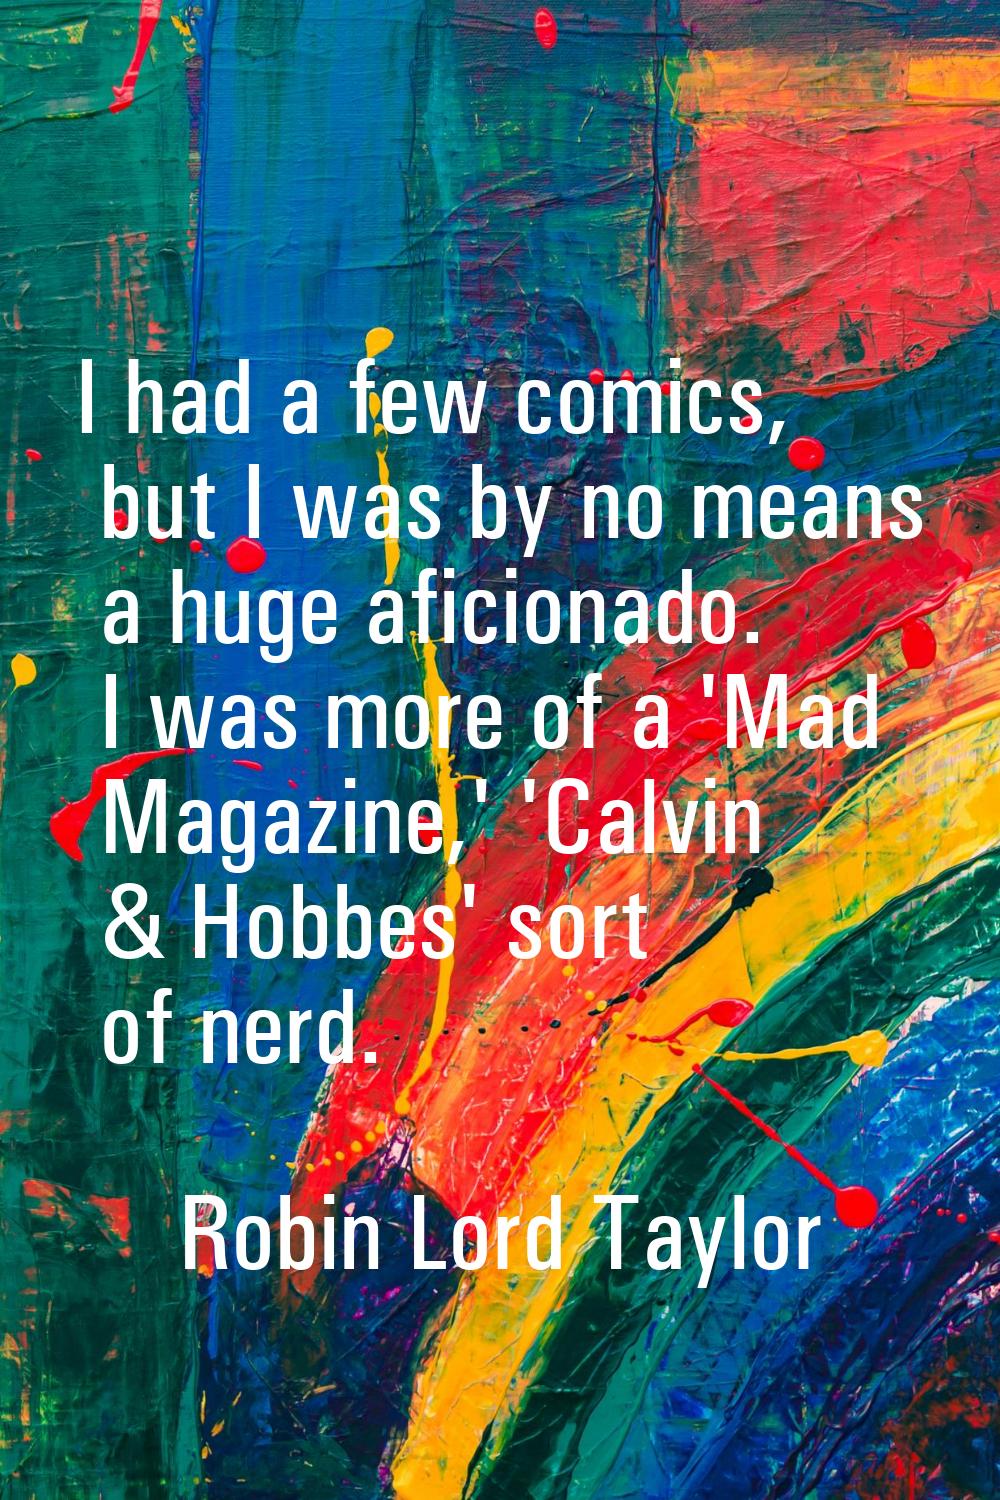 I had a few comics, but I was by no means a huge aficionado. I was more of a 'Mad Magazine,' 'Calvi